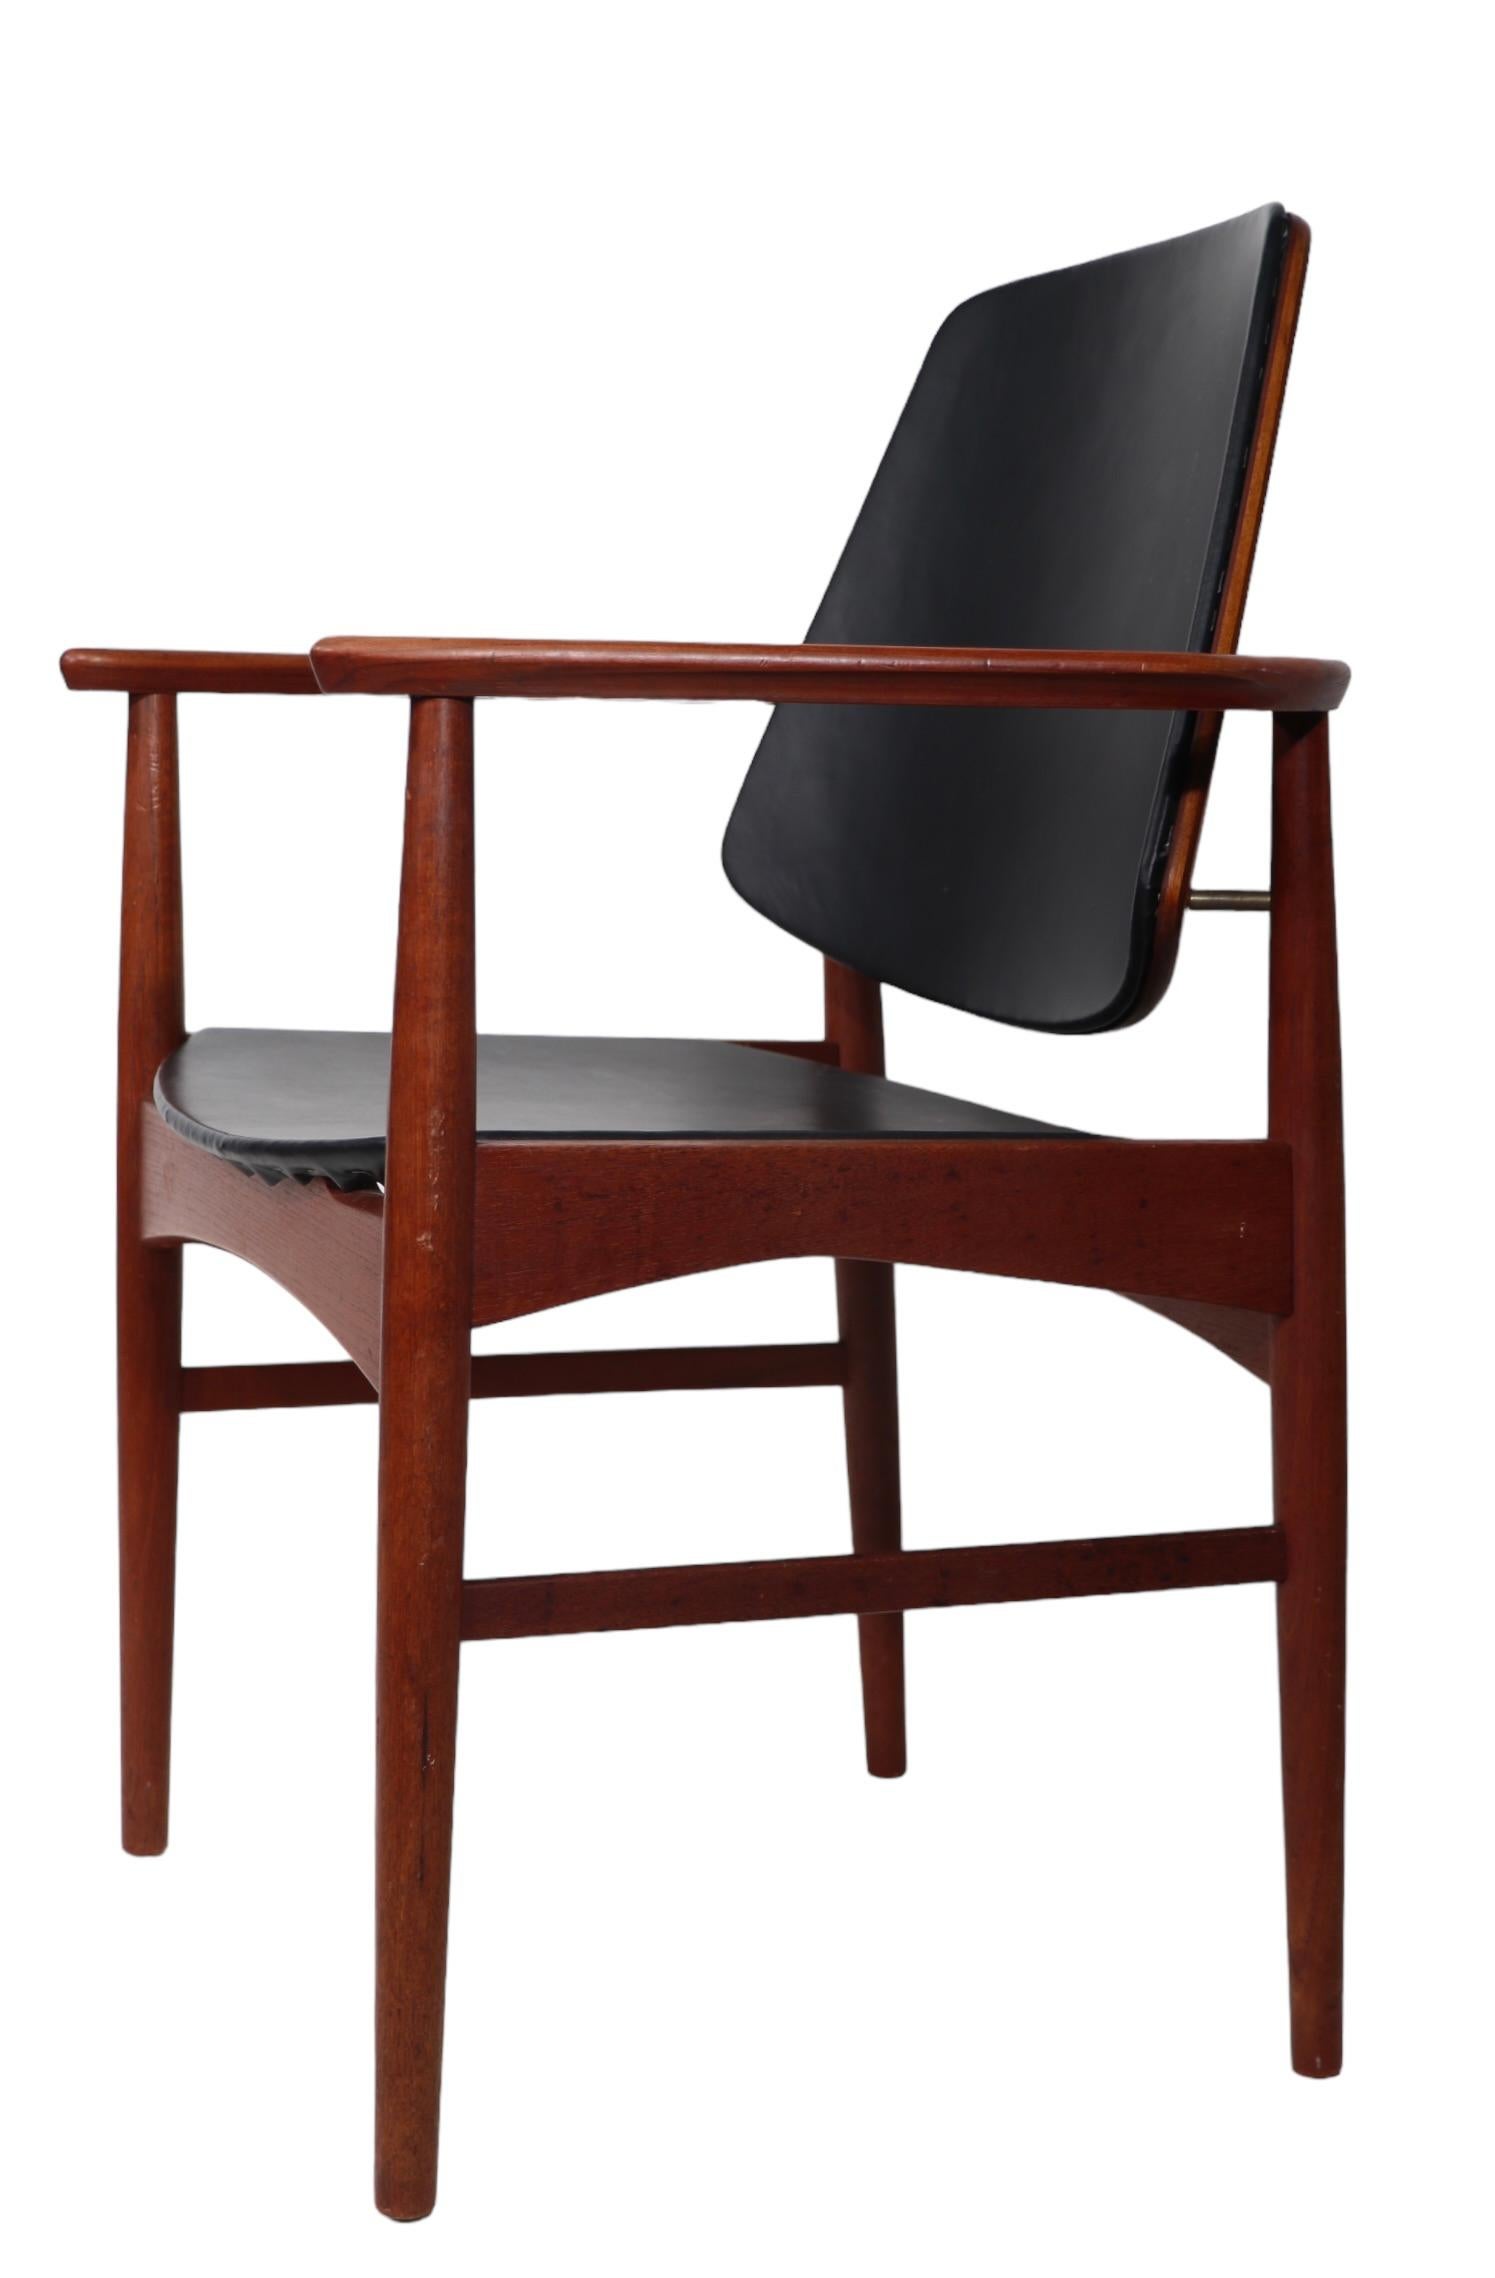 Satz von sechs dänischen Mid Century Modern Esszimmerstühlen aus massivem Teakholz mit schwarzen Vinylsitzen und Rückenlehnen. Das Set besteht aus vier Beistell- und zwei Sesseln - dieser Entwurf wird oft Arne Hovmand Olsen für Onsild zugeschrieben.